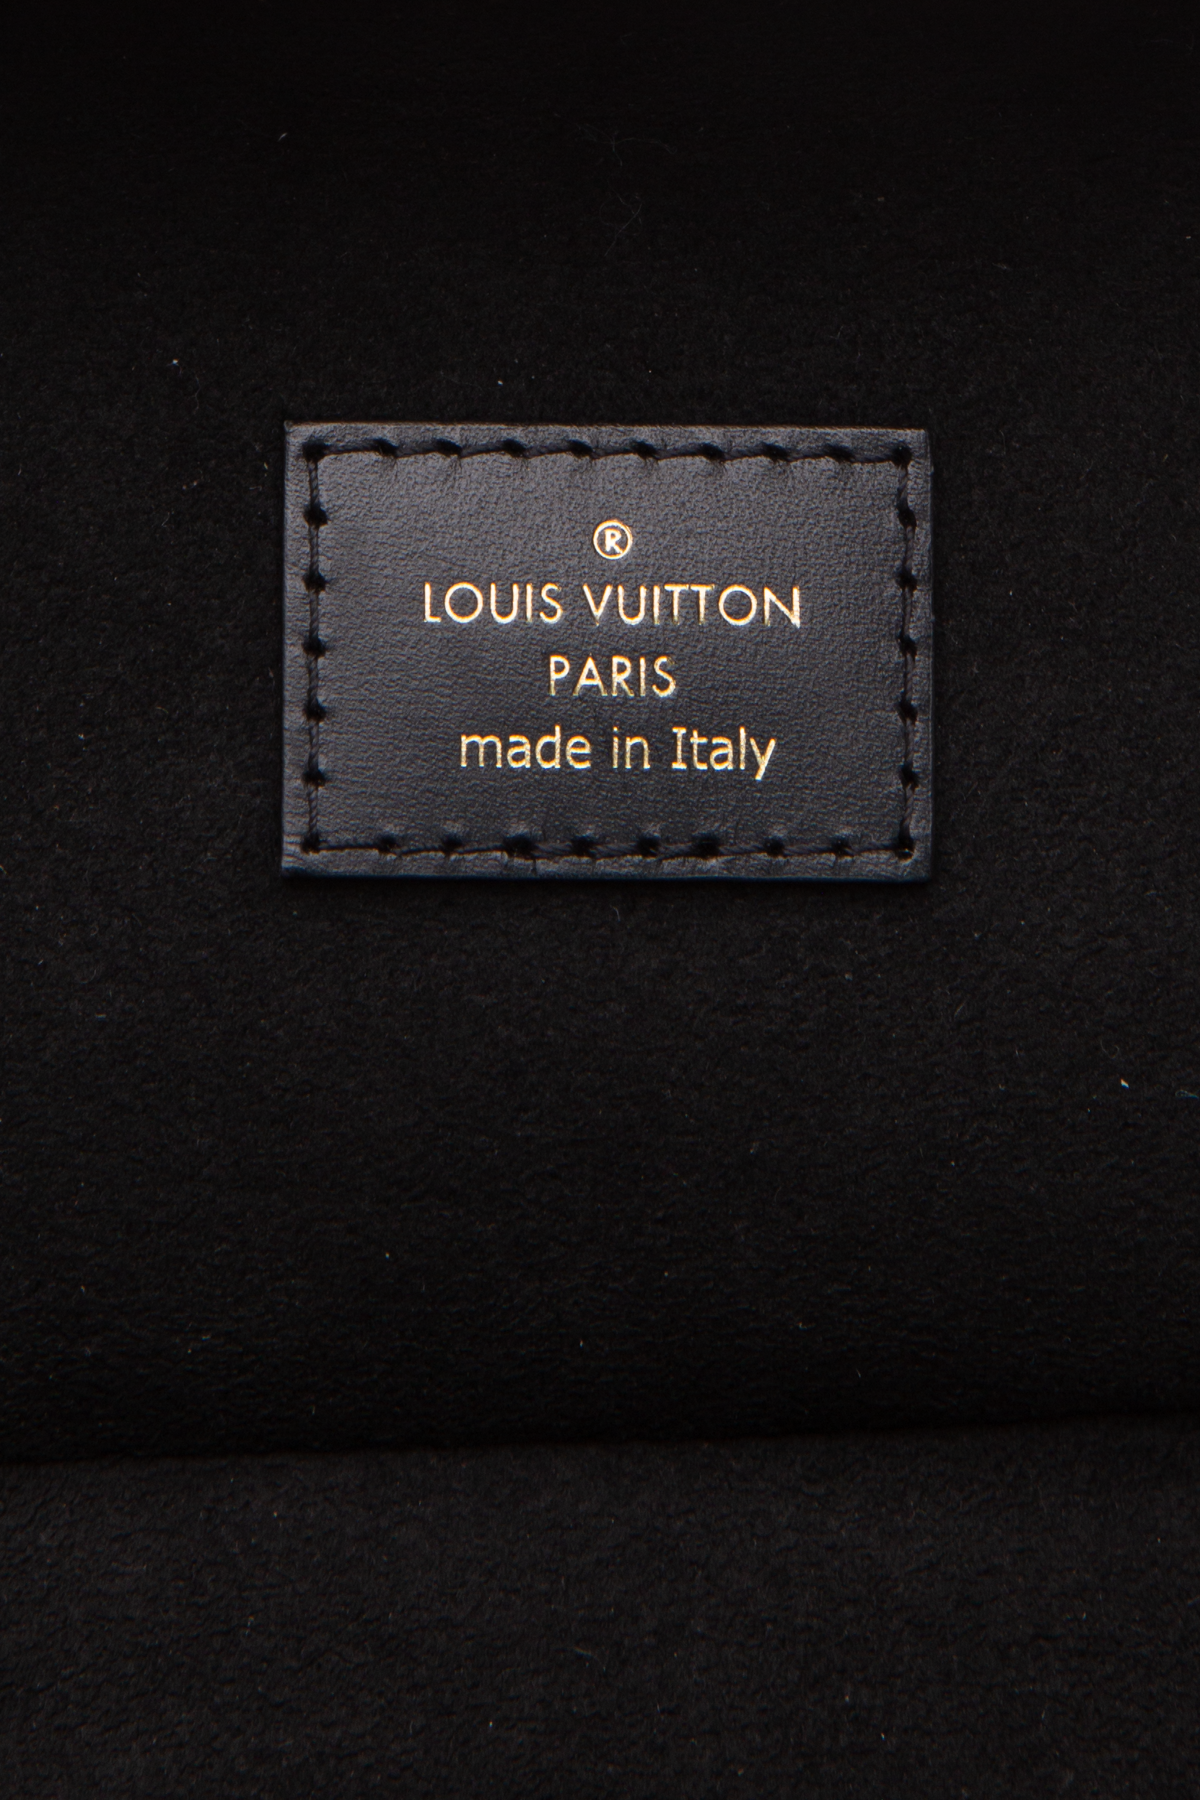 Louis Vuitton Gets Into the A La Carte Strap Game with Bandoulière